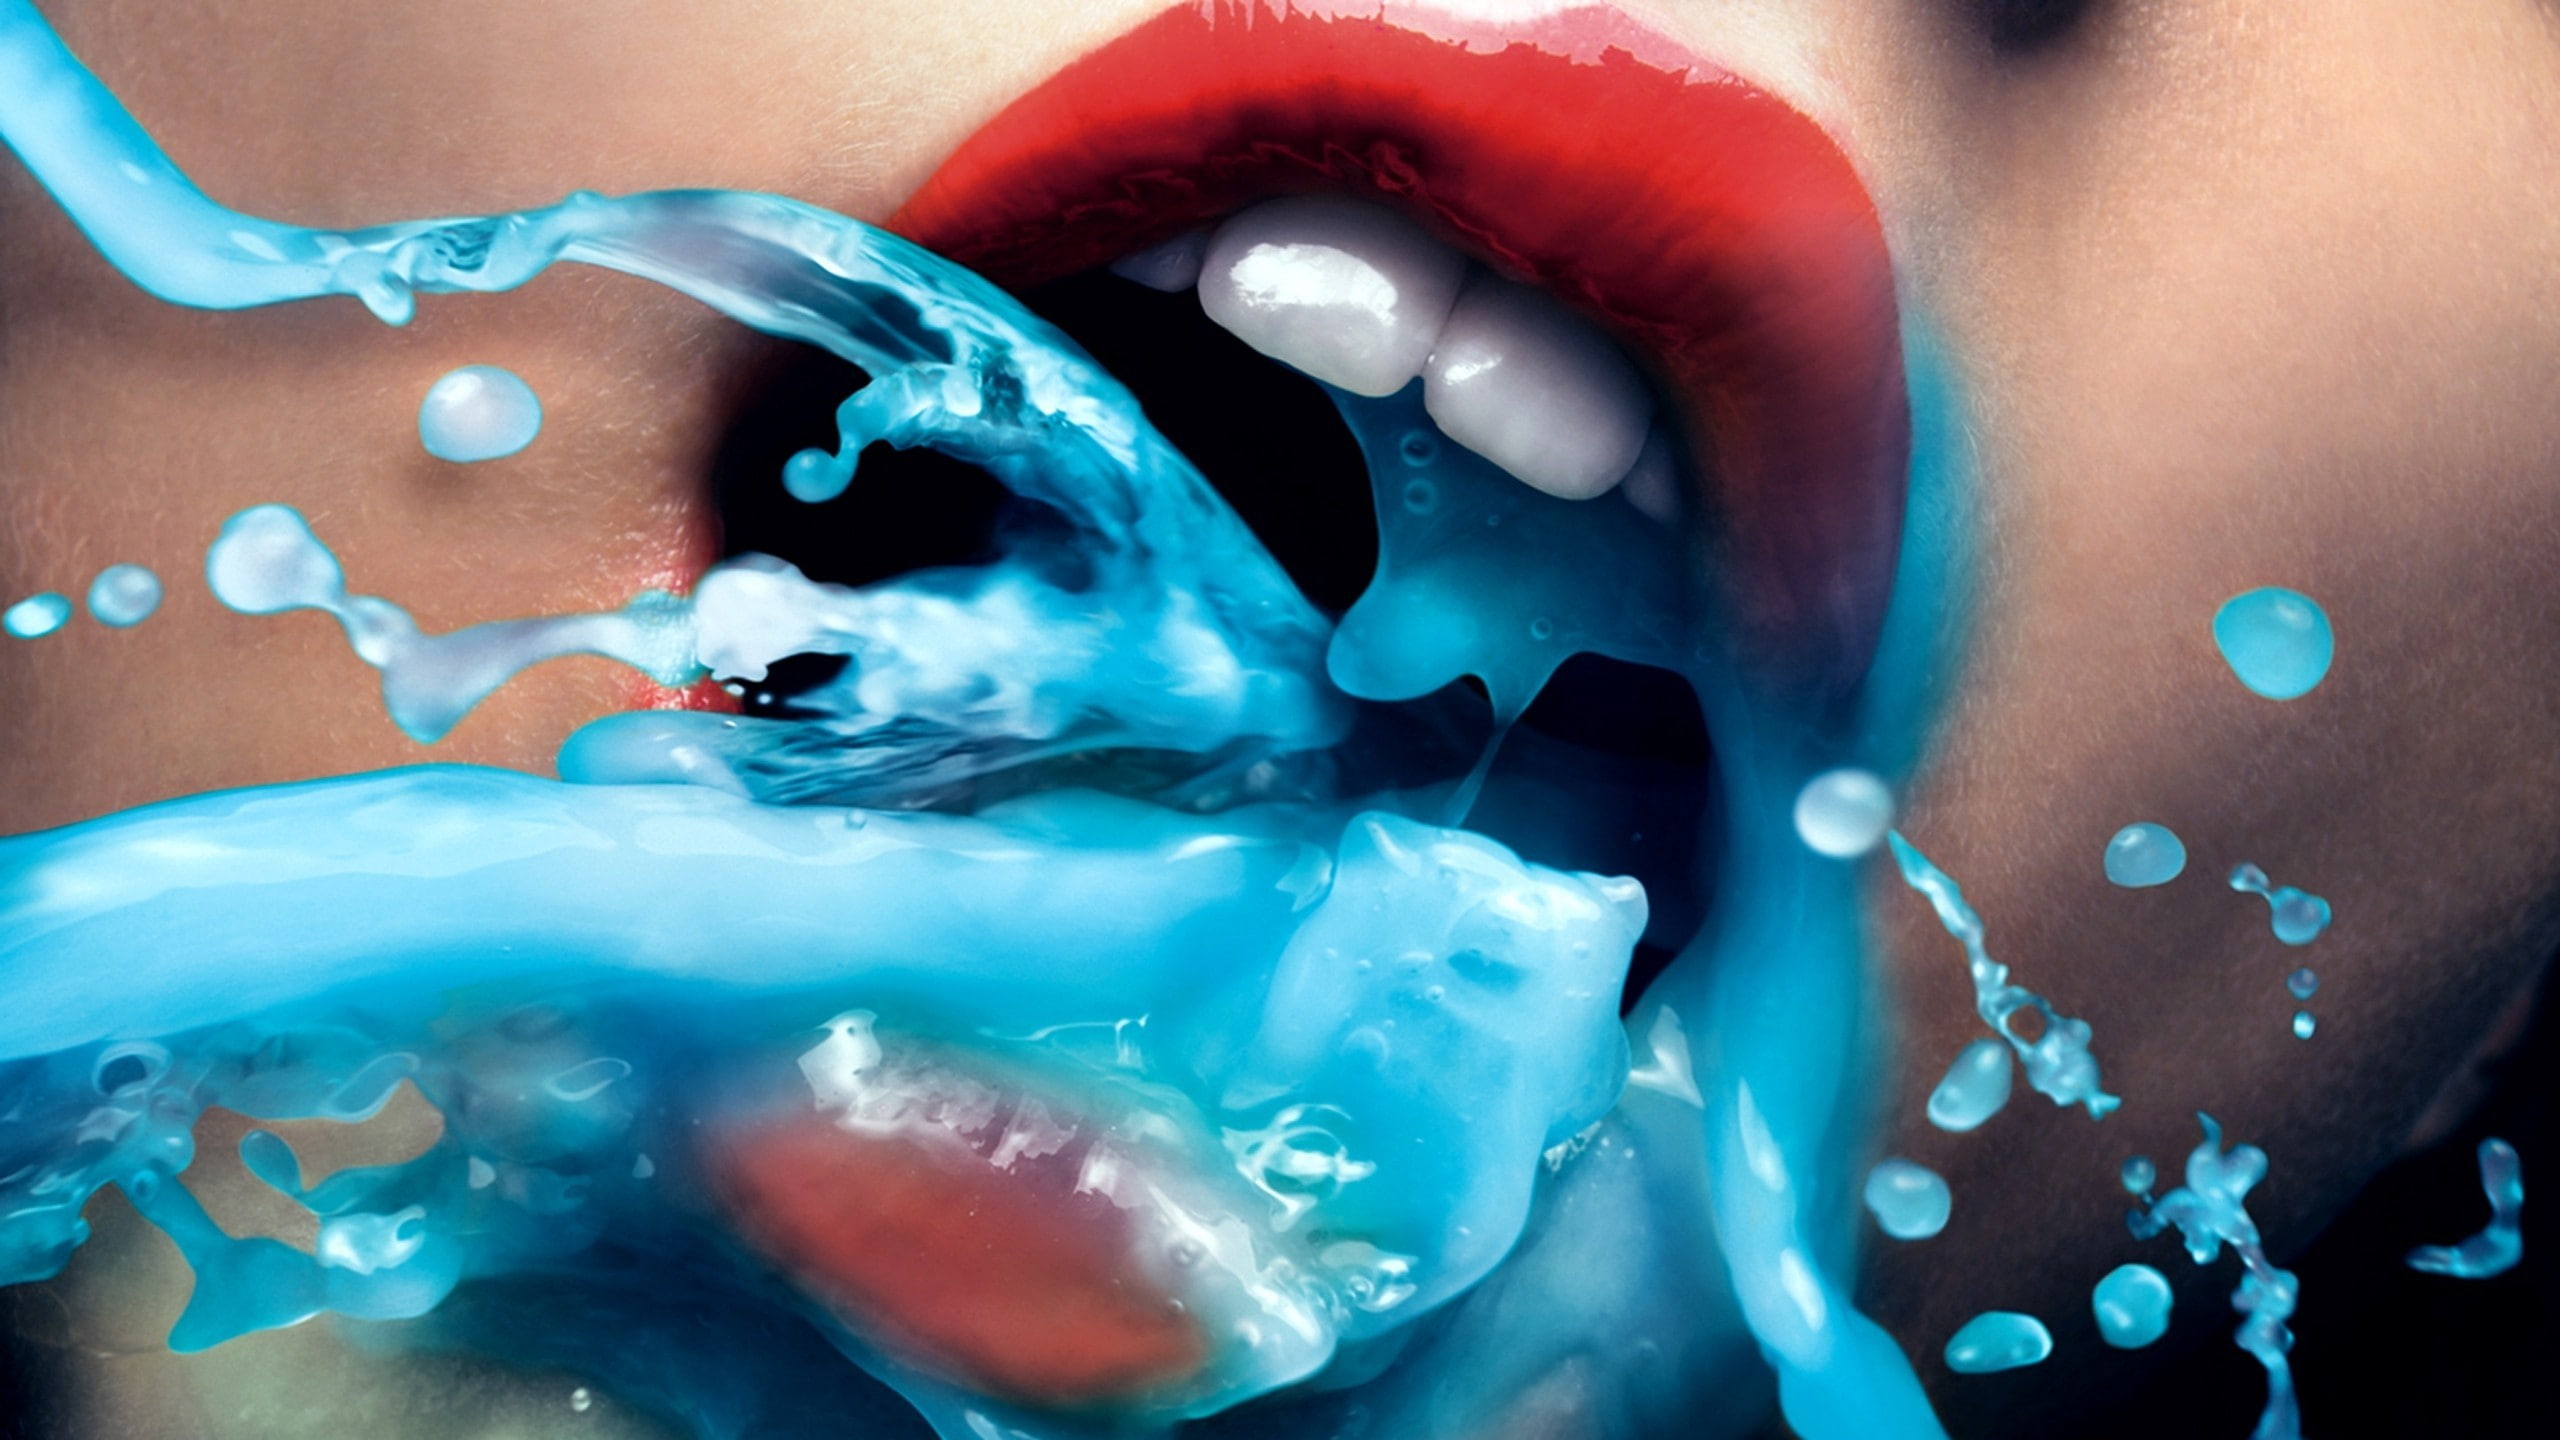 women, lips, open mouth, teeth, liquid, blue, model, digital art